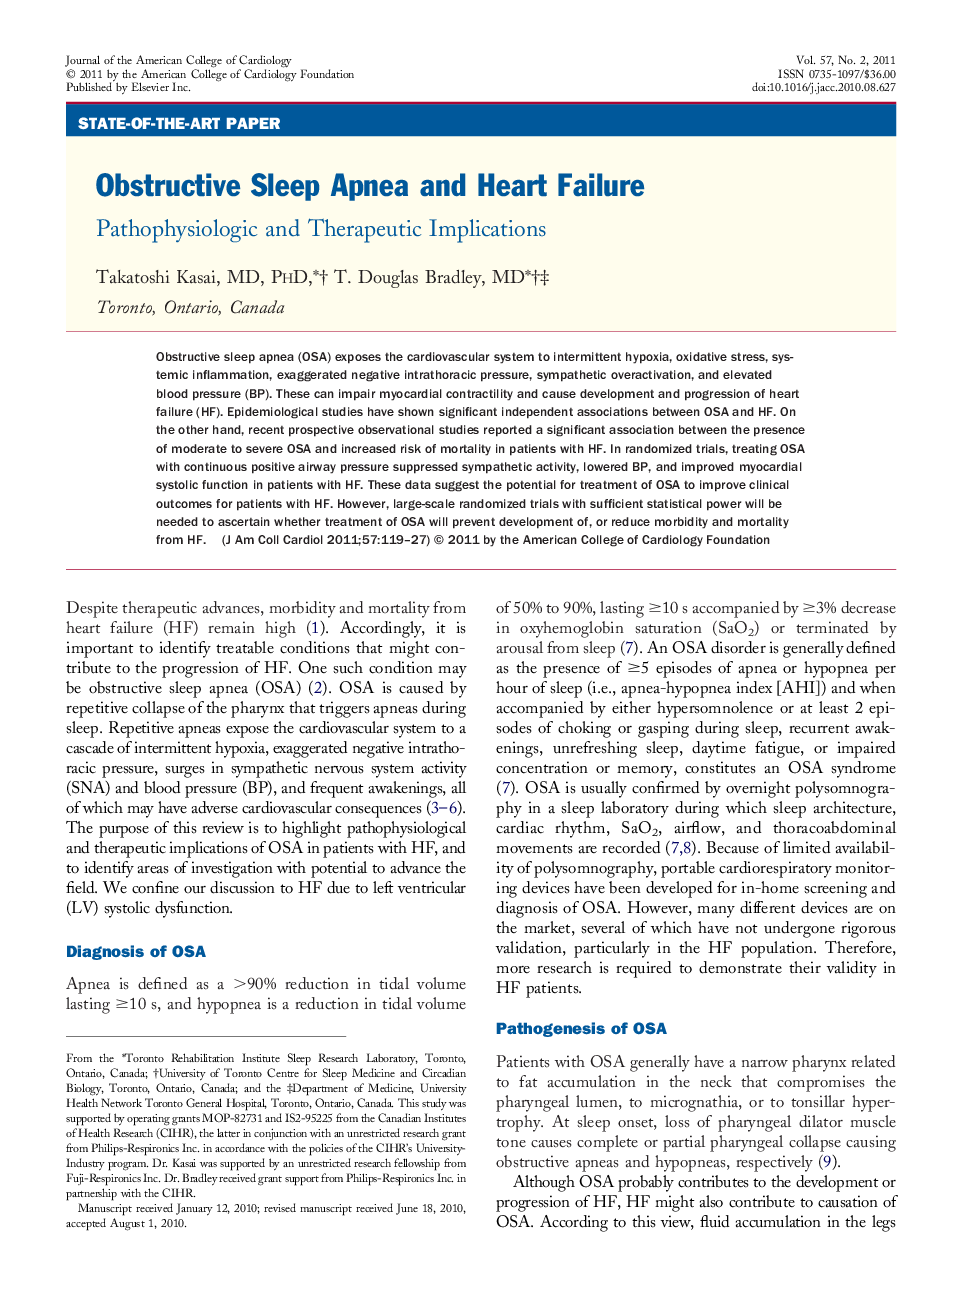 Obstructive Sleep Apnea and Heart Failure : Pathophysiologic and Therapeutic Implications